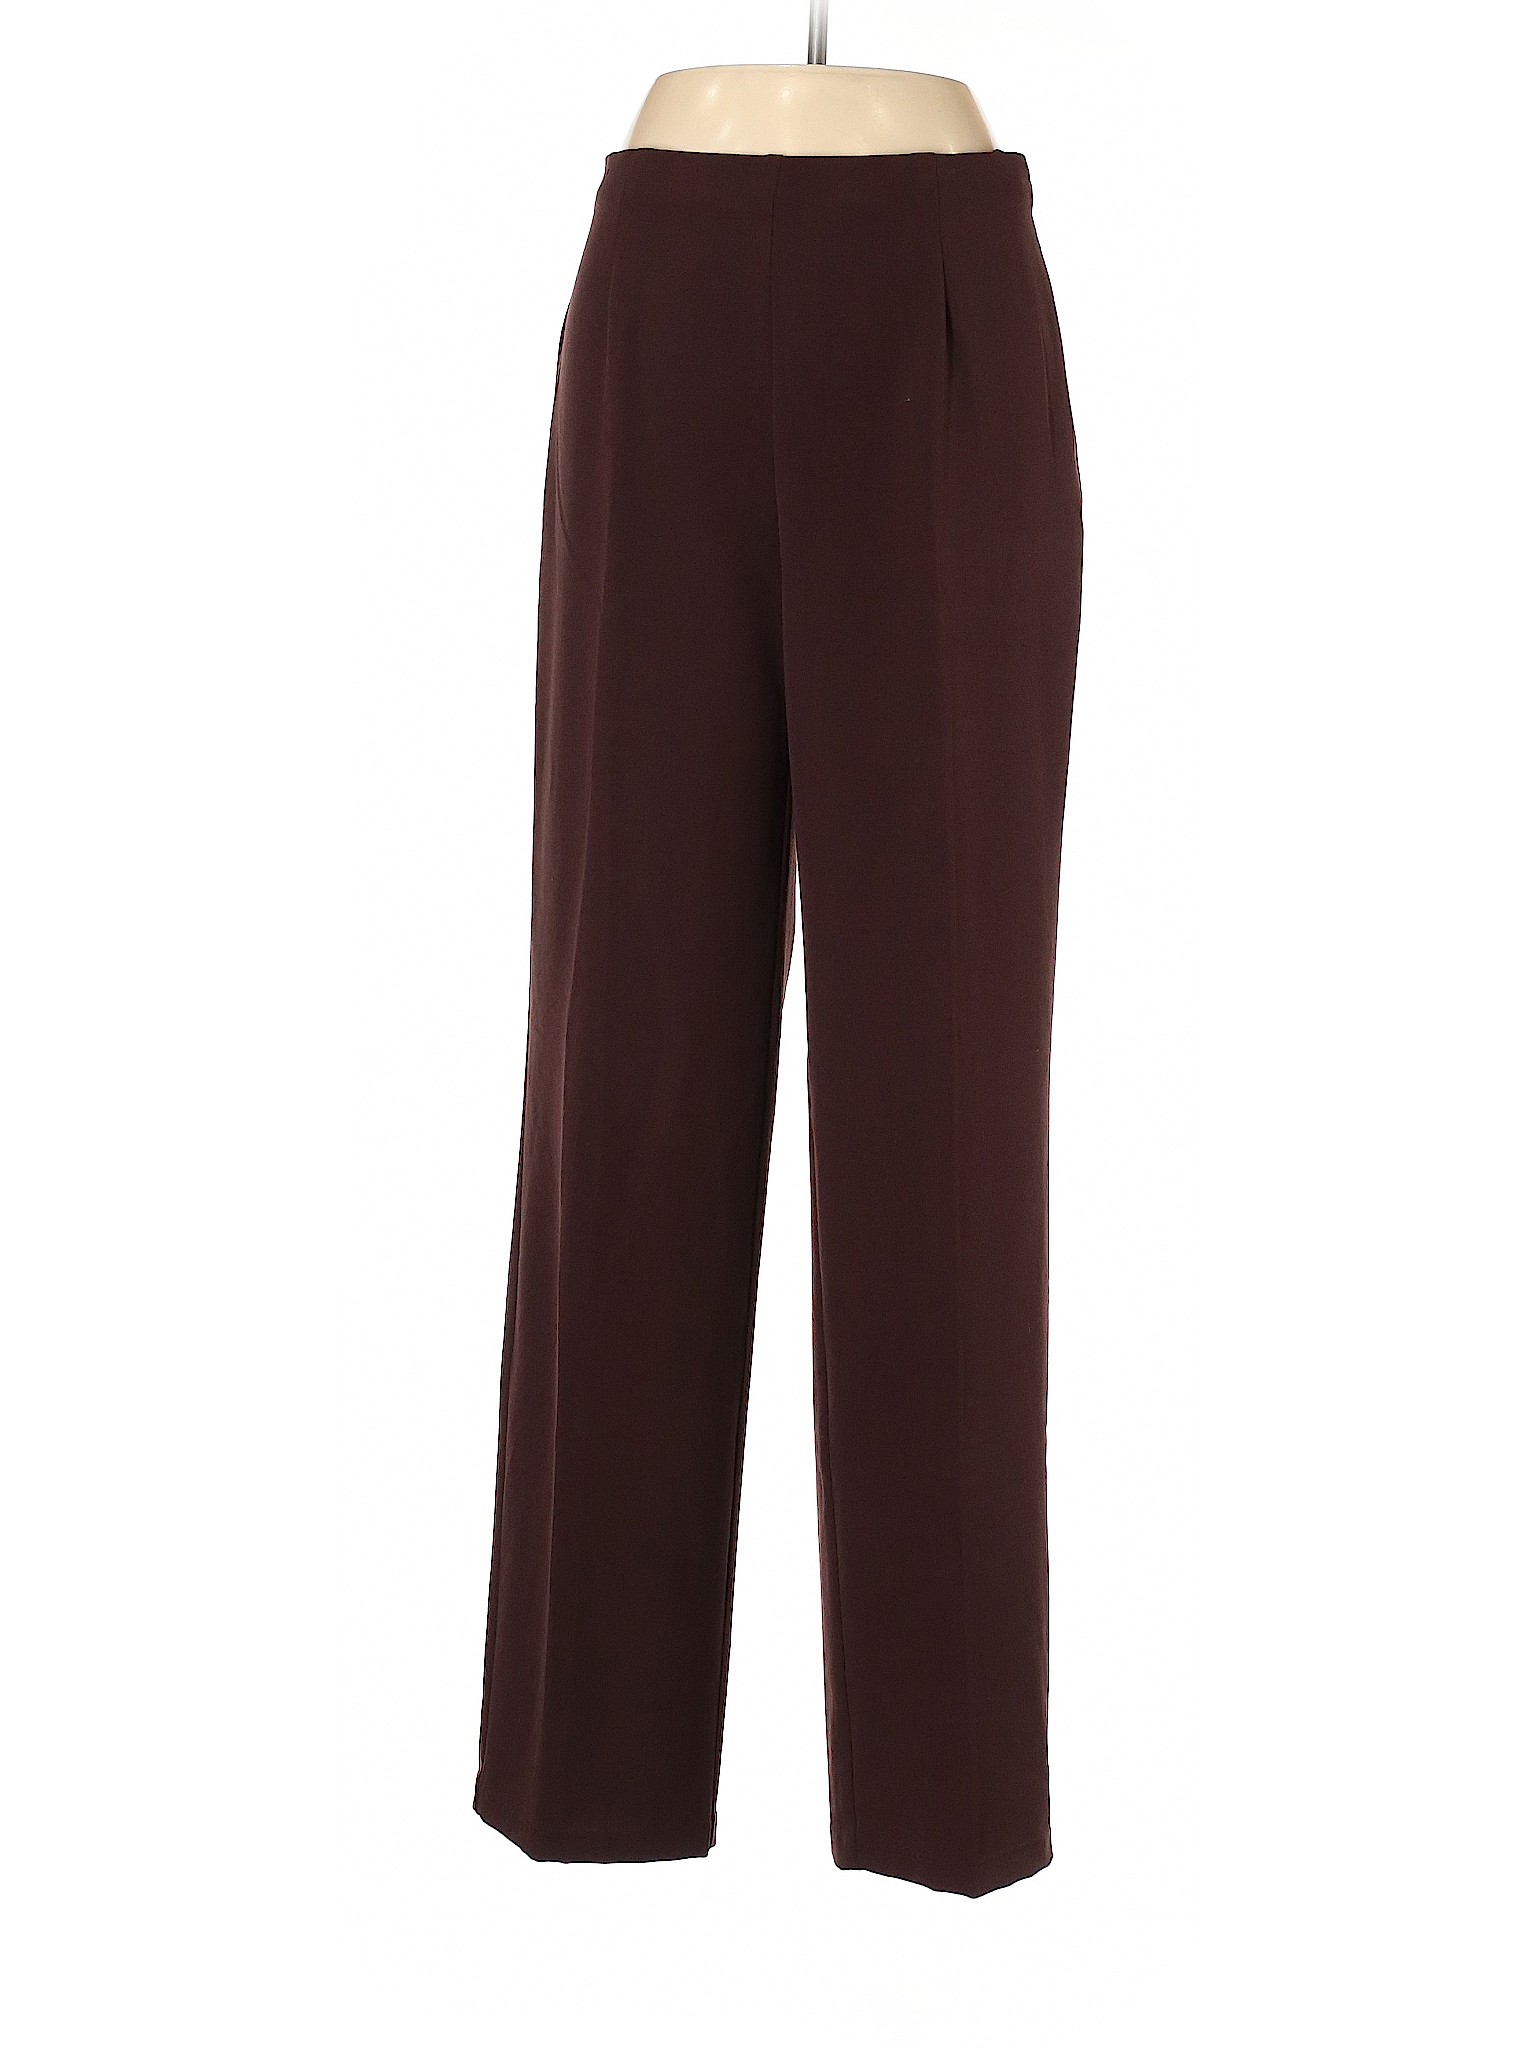 Coldwater Creek Women Brown Dress Pants 8 | eBay